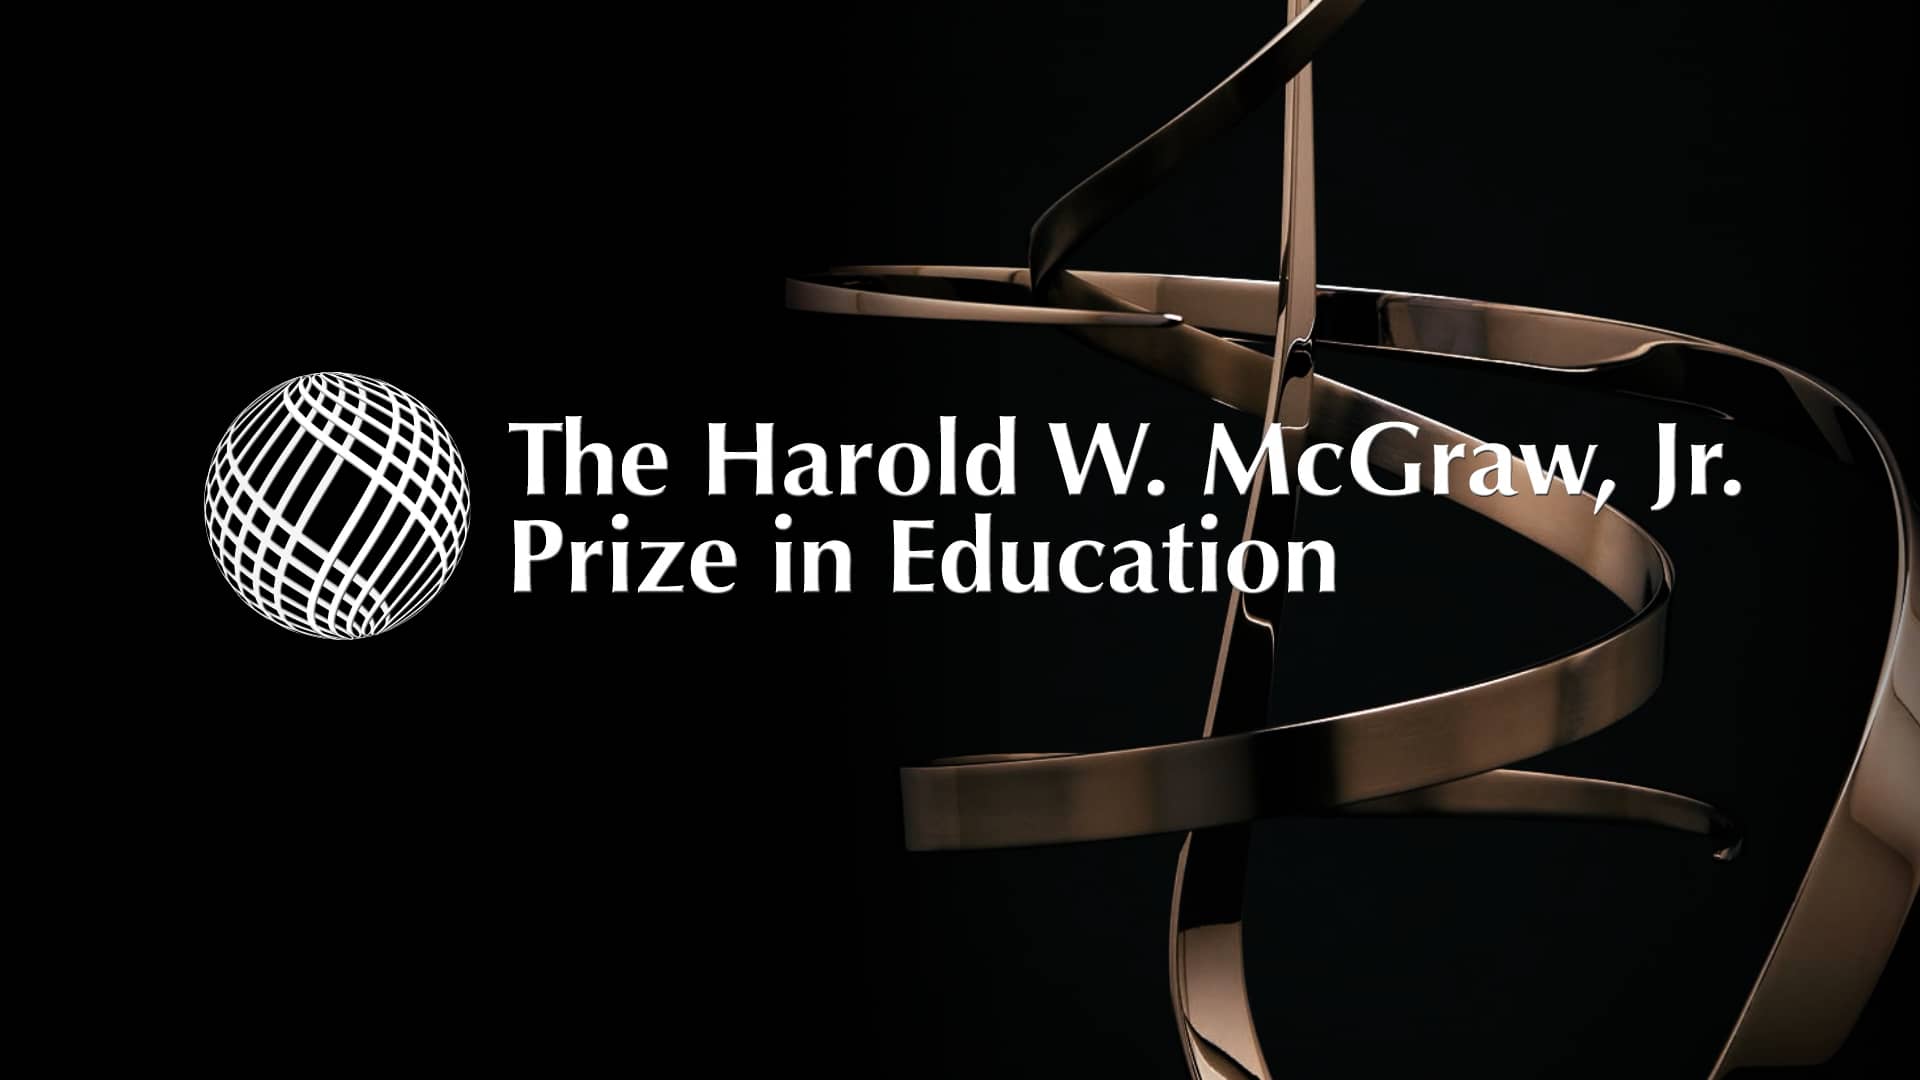  2021 Harold W. McGraw, Jr. Prize in Education Celebration